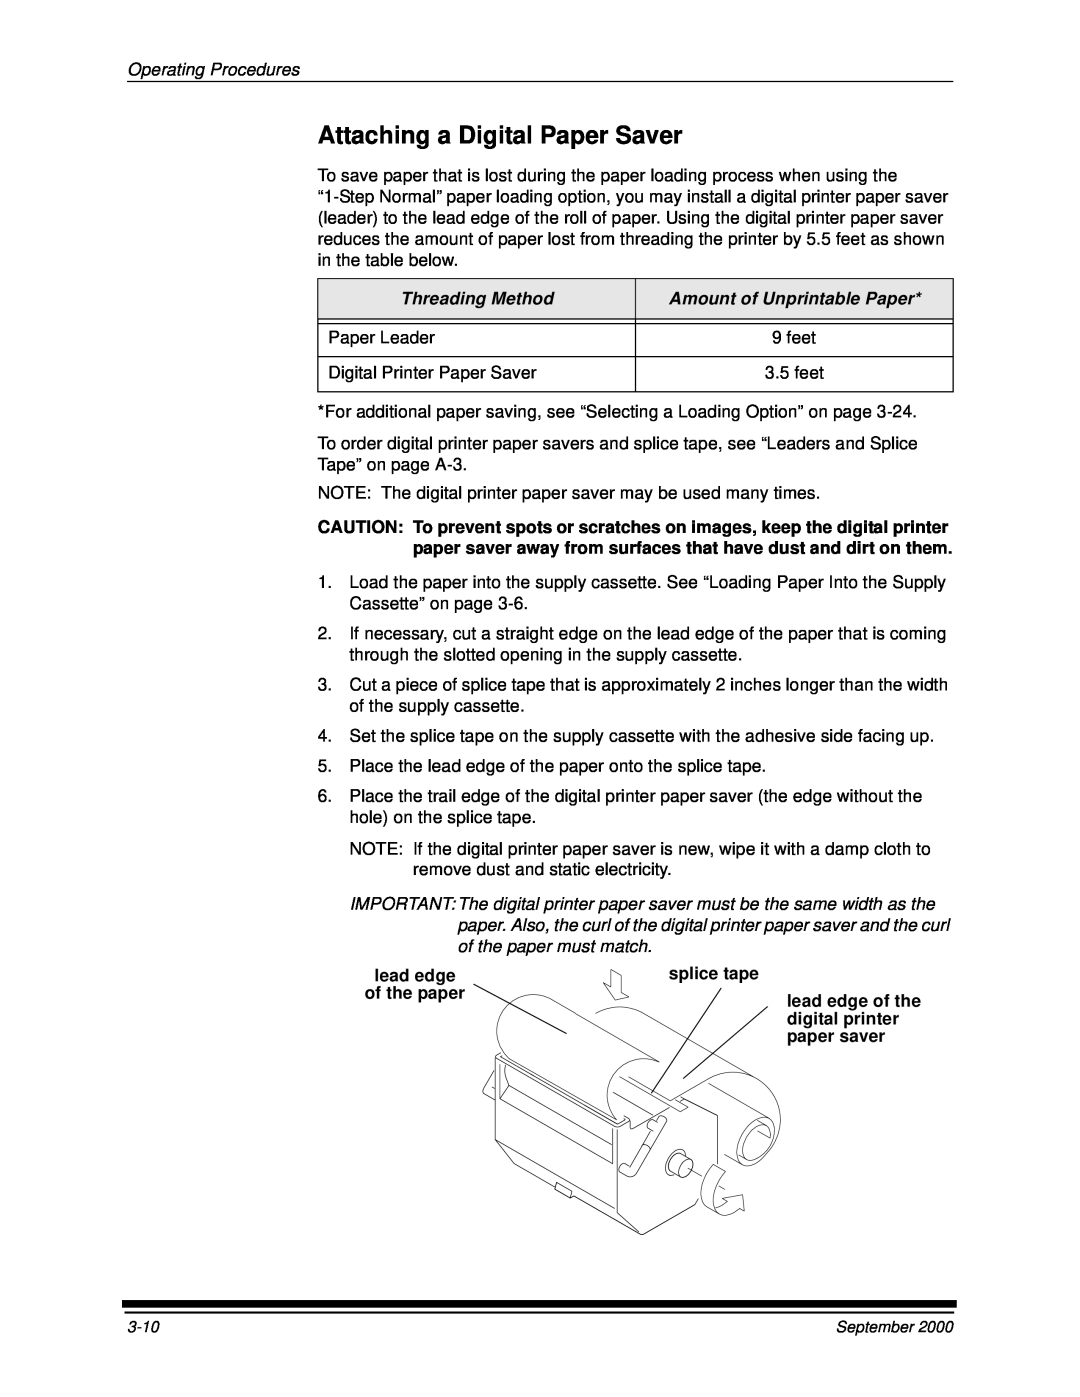 Kodak 20R manual Attaching a Digital Paper Saver, Operating Procedures, splice tape, digital printer, paper saver 